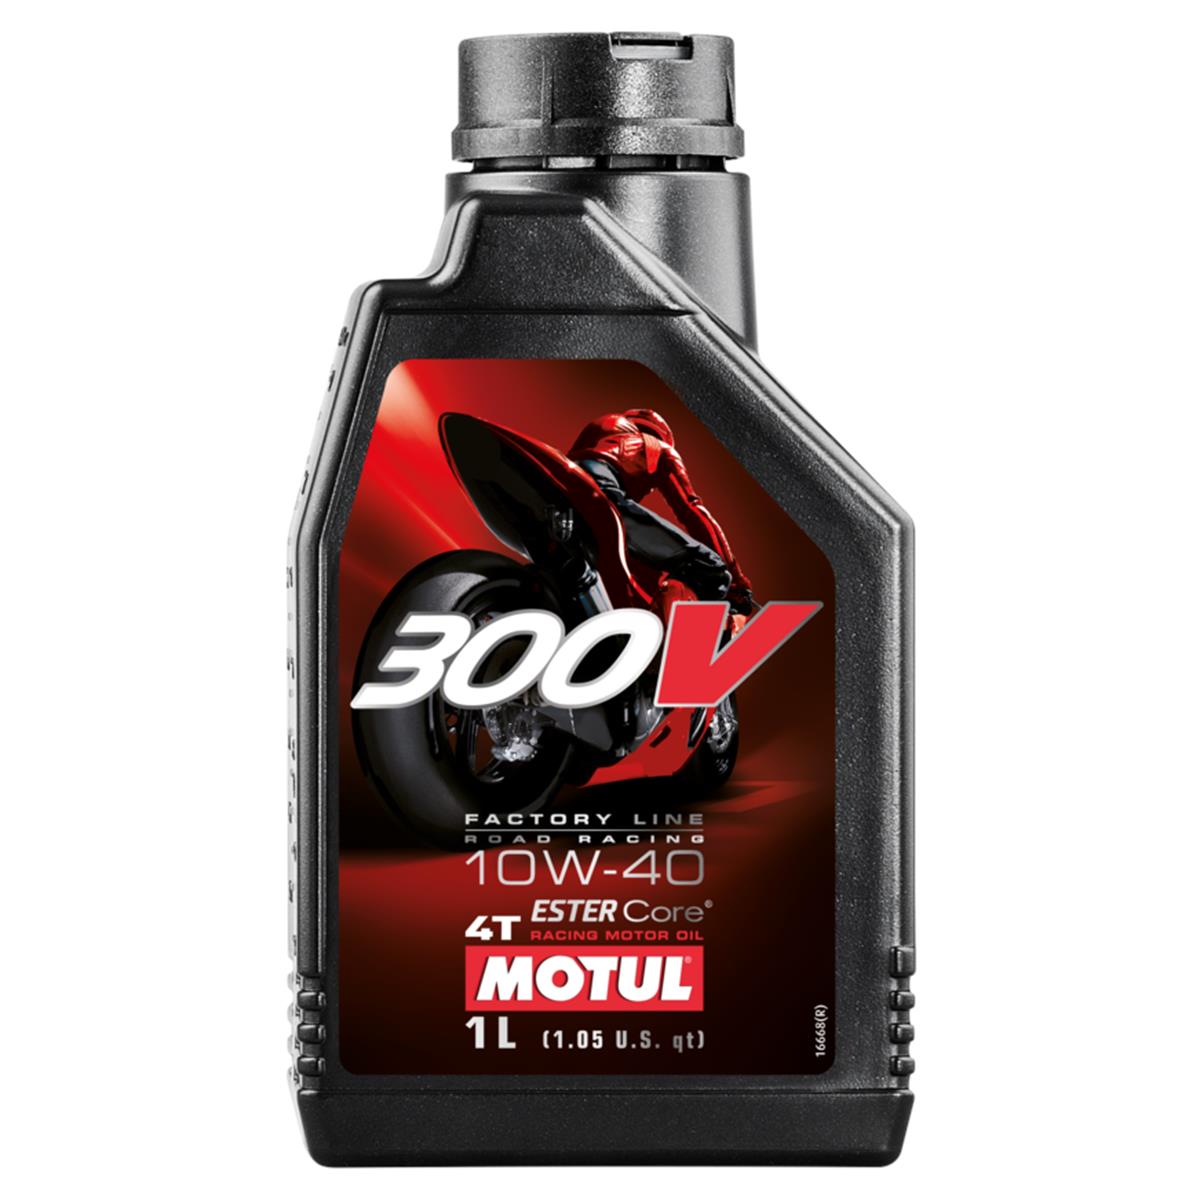 Motul Motor Oil 300V 4T 10W40, 1 Liter